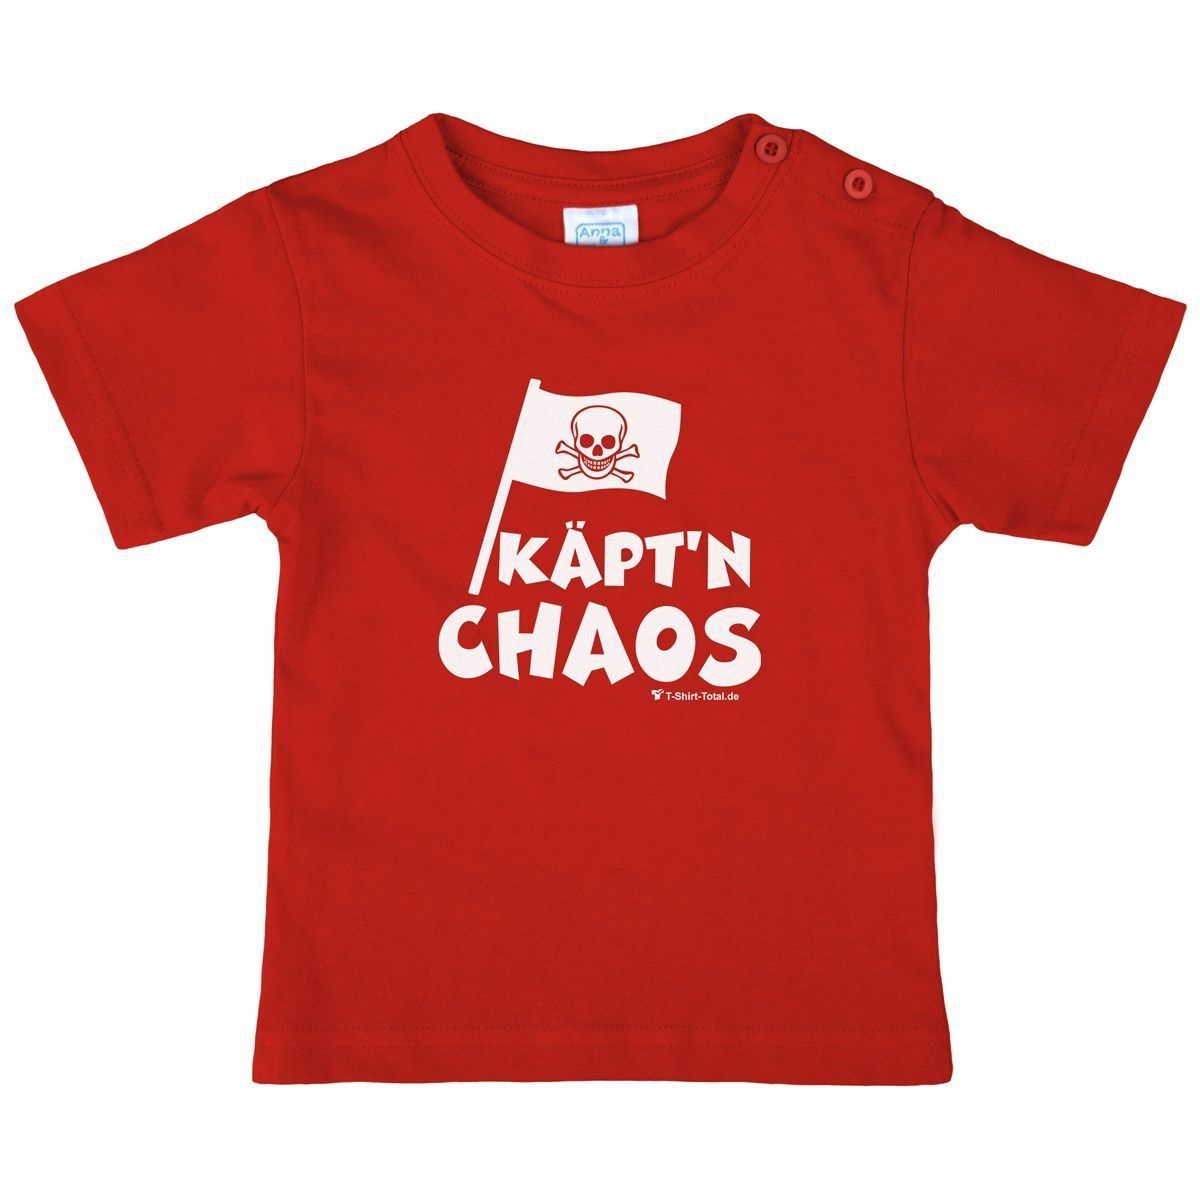 Käptn Chaos Kinder T-Shirt rot 104